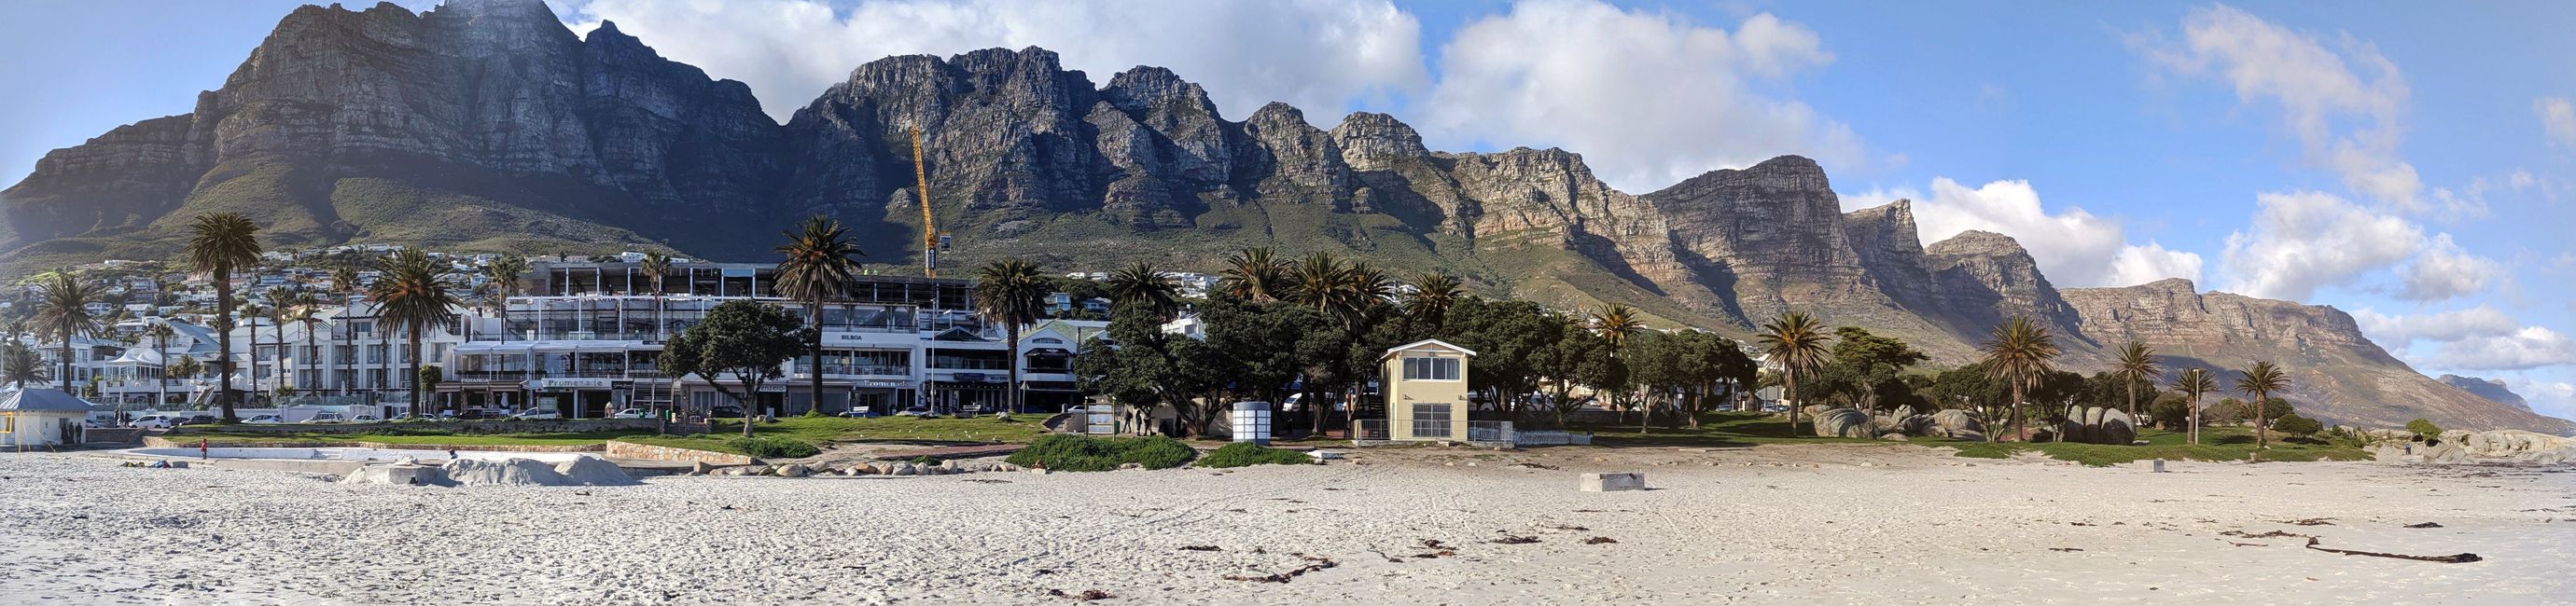 Dag 23: Camps Bay & Äddi Cape Town